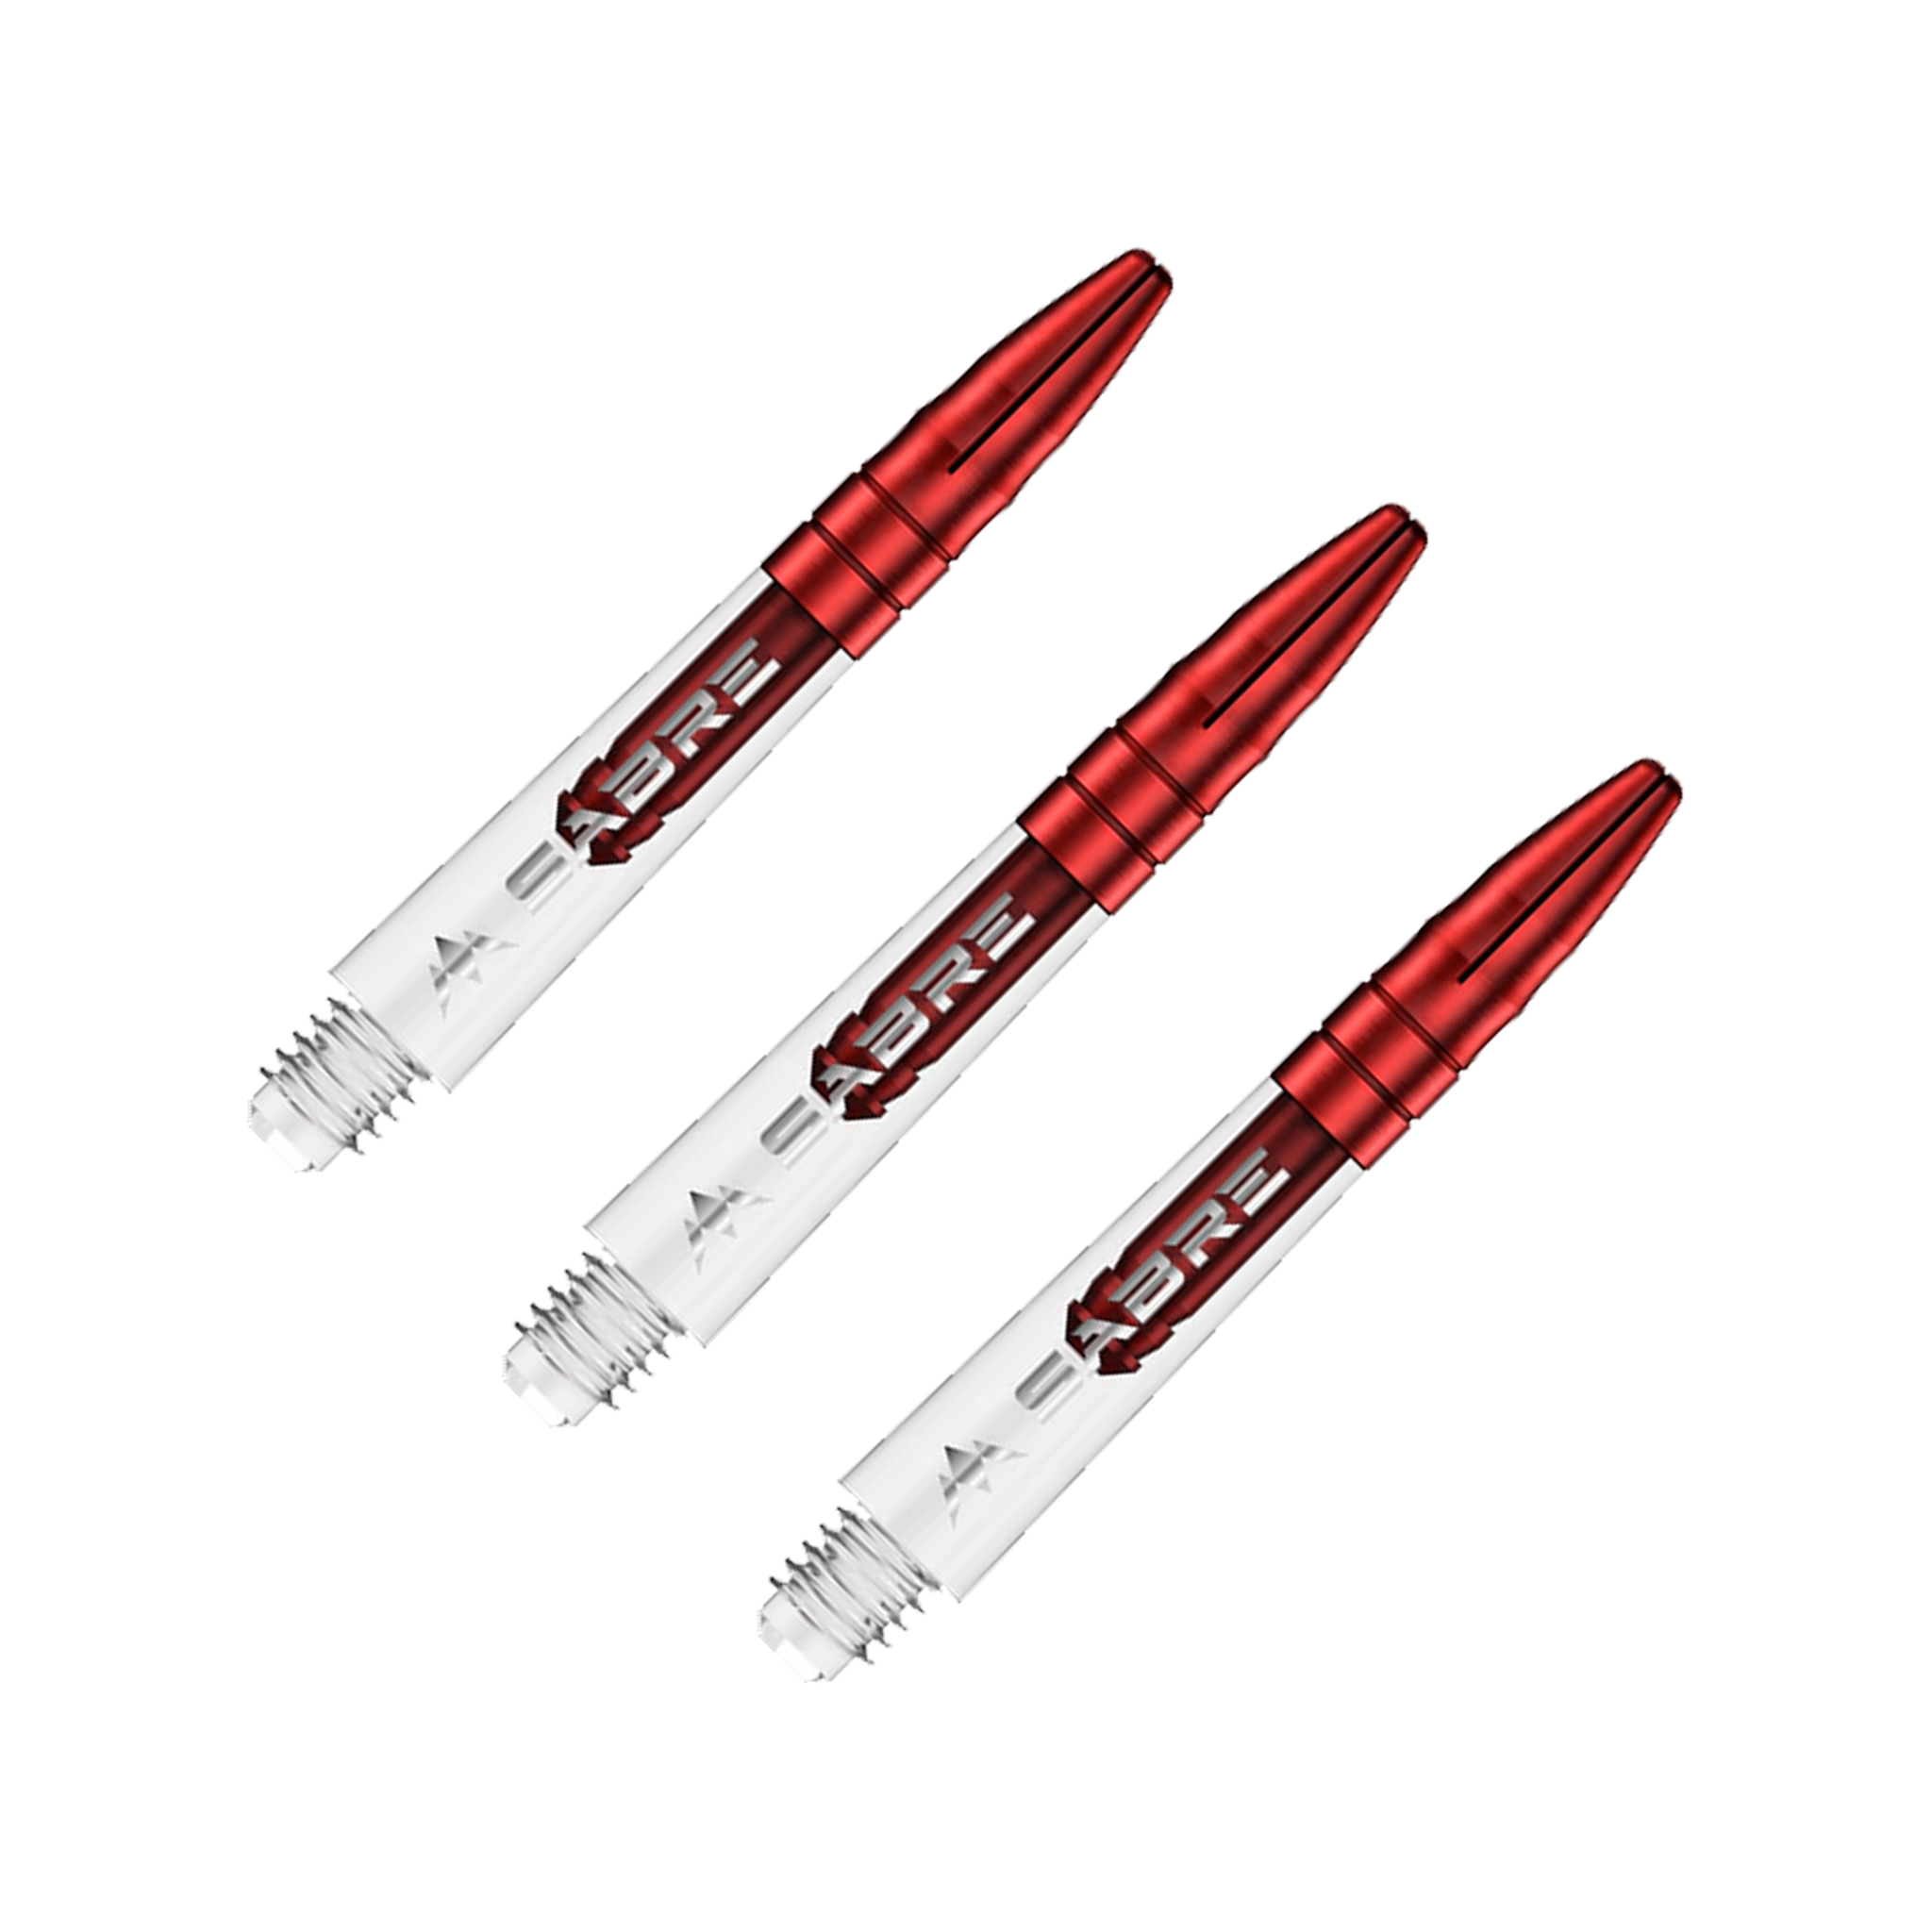 Mission Sabre - Polycarbonate Dart Shafts Short (36mm) / Clear & Red Shafts